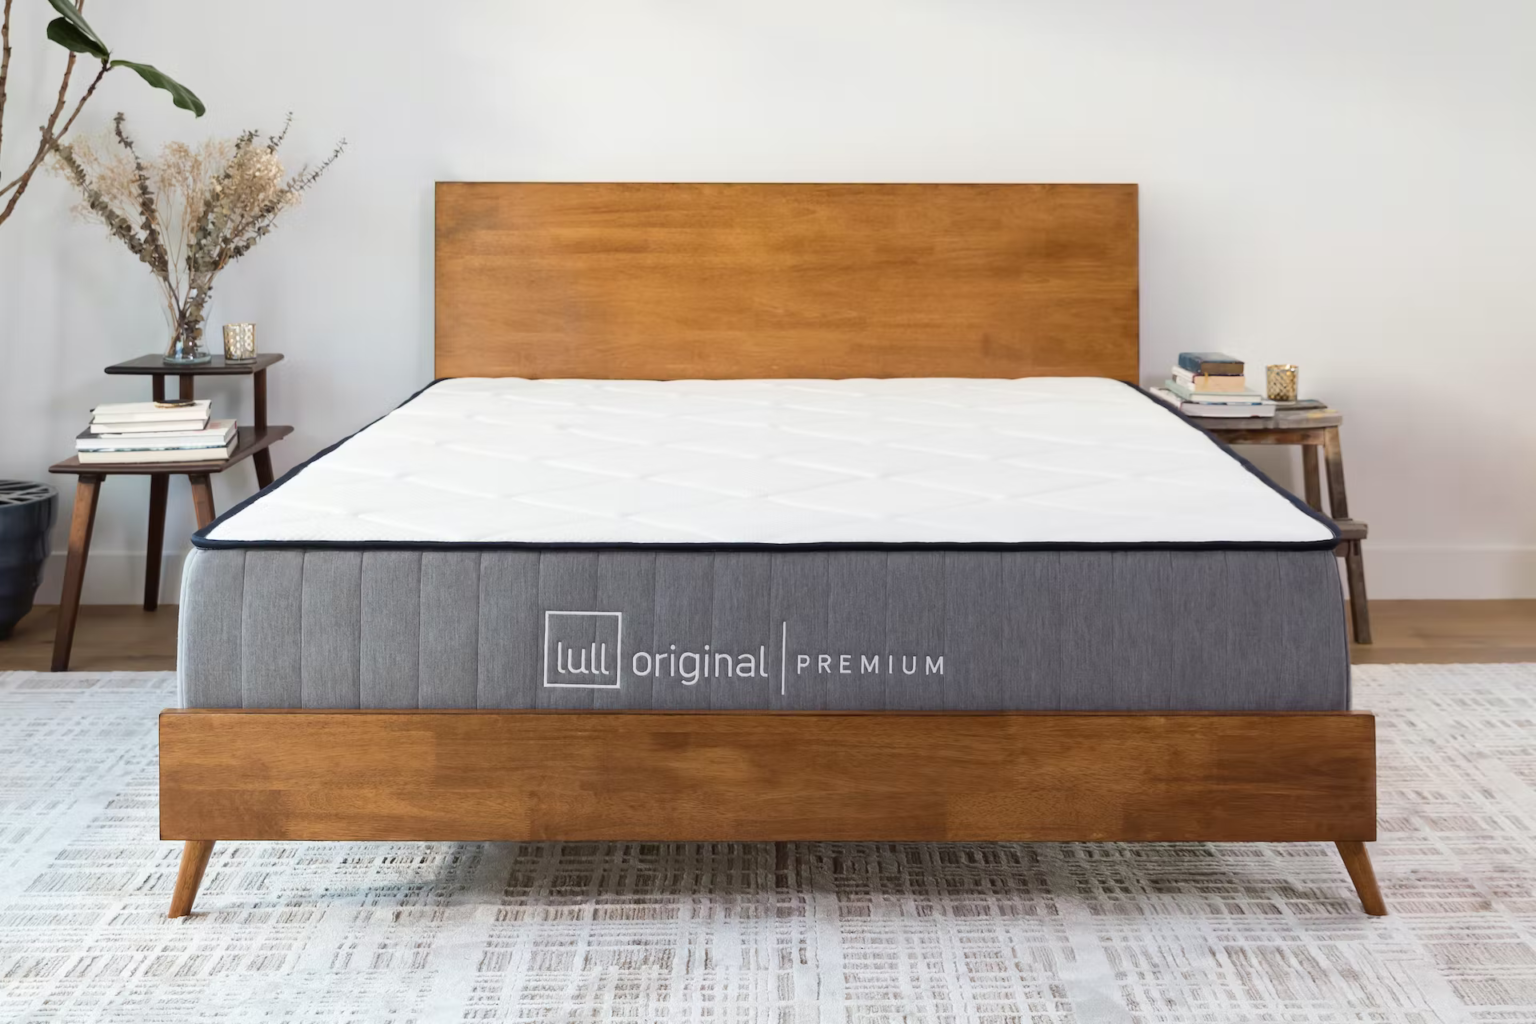 product image of the Lull Original Premium mattress